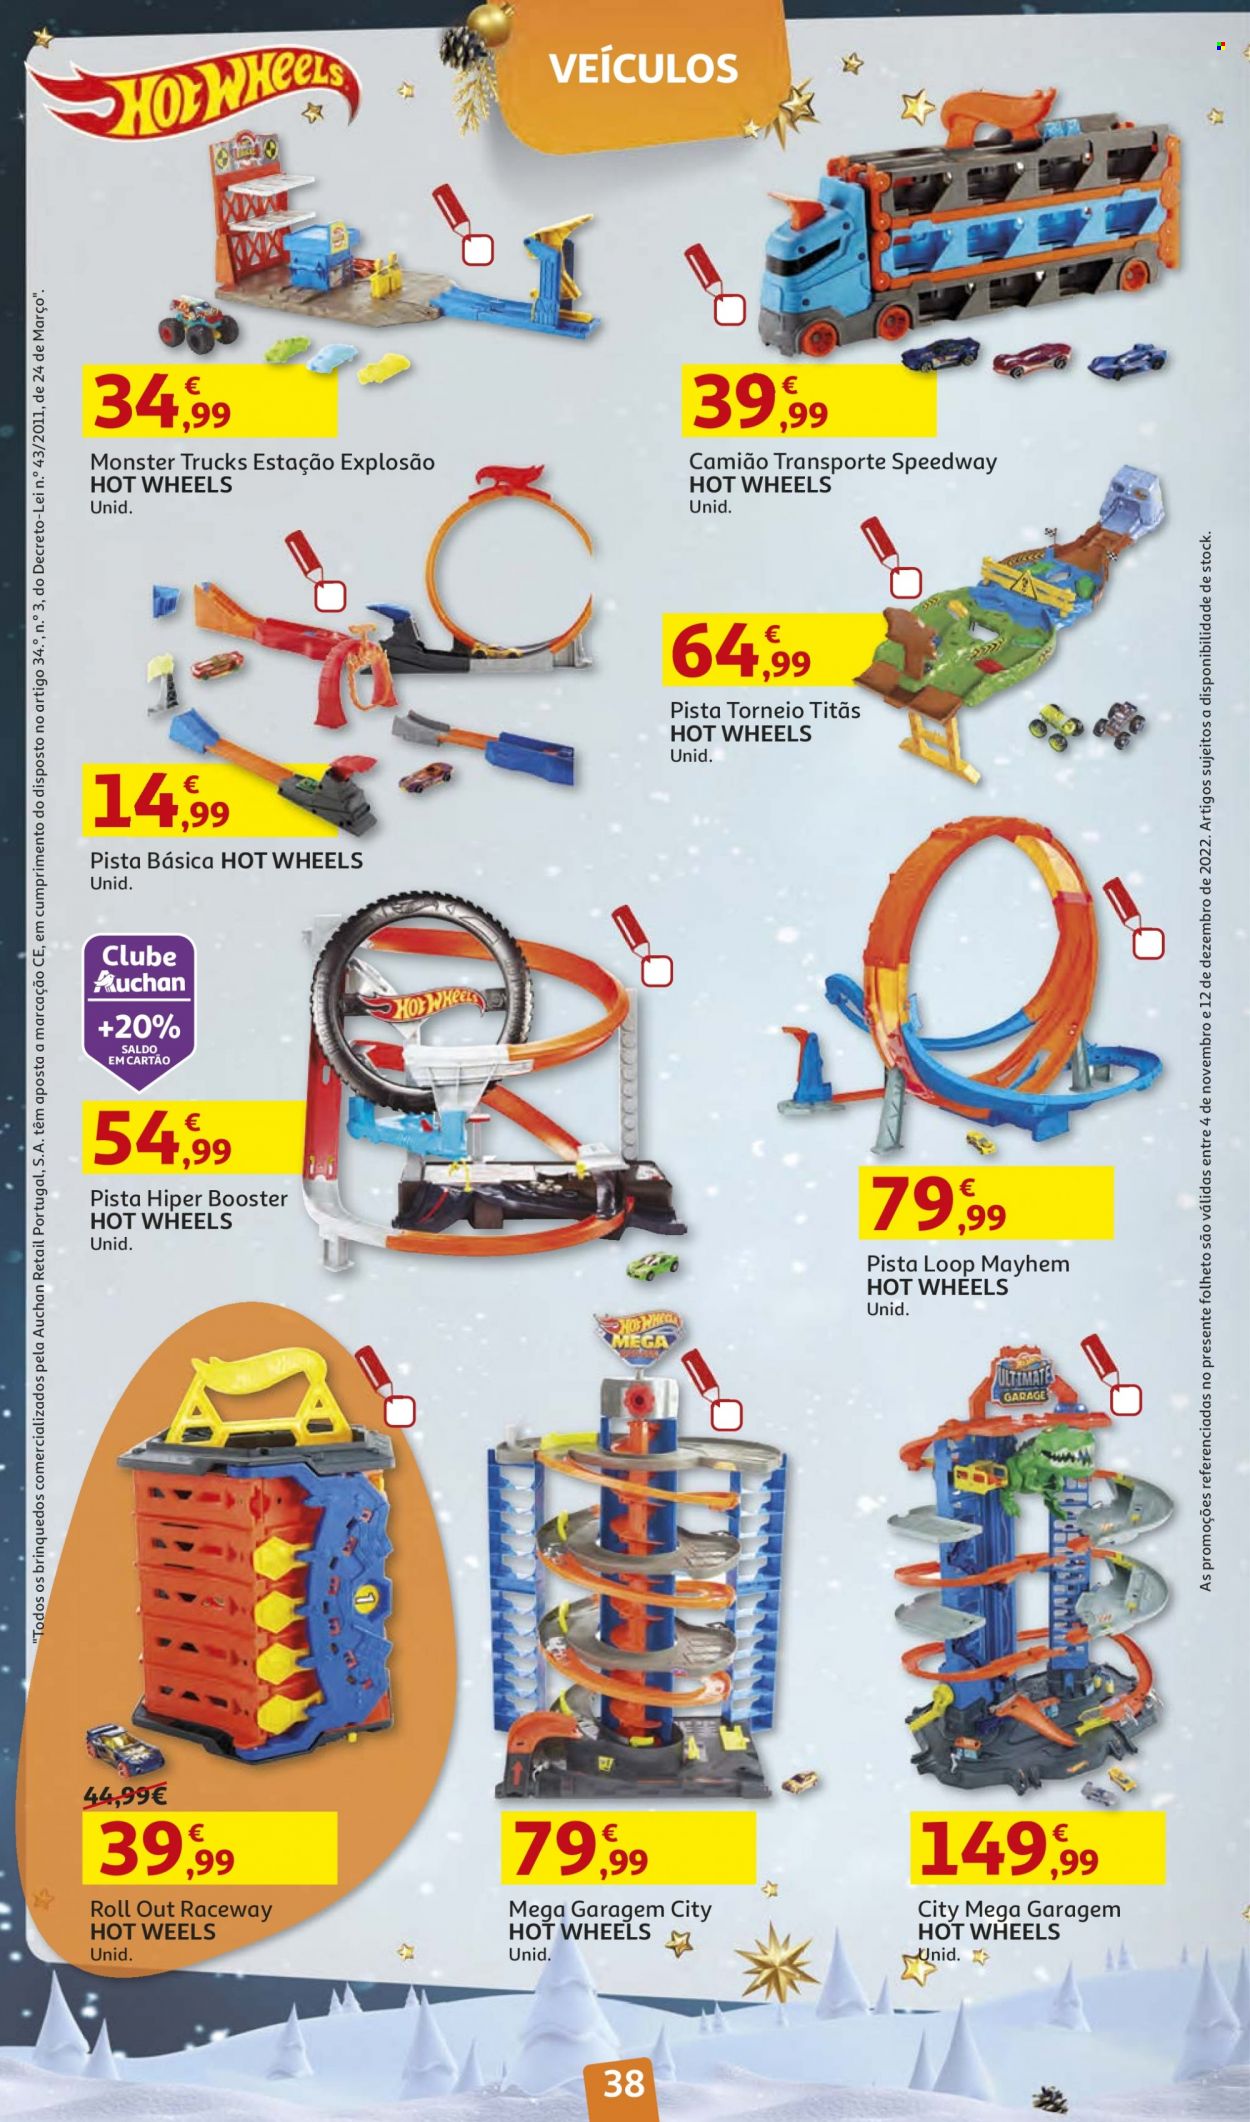 Folheto Auchan - 4.11.2022 - 12.12.2022 - Produtos em promoção - Hot Wheels, veículo, garagem. Página 38.